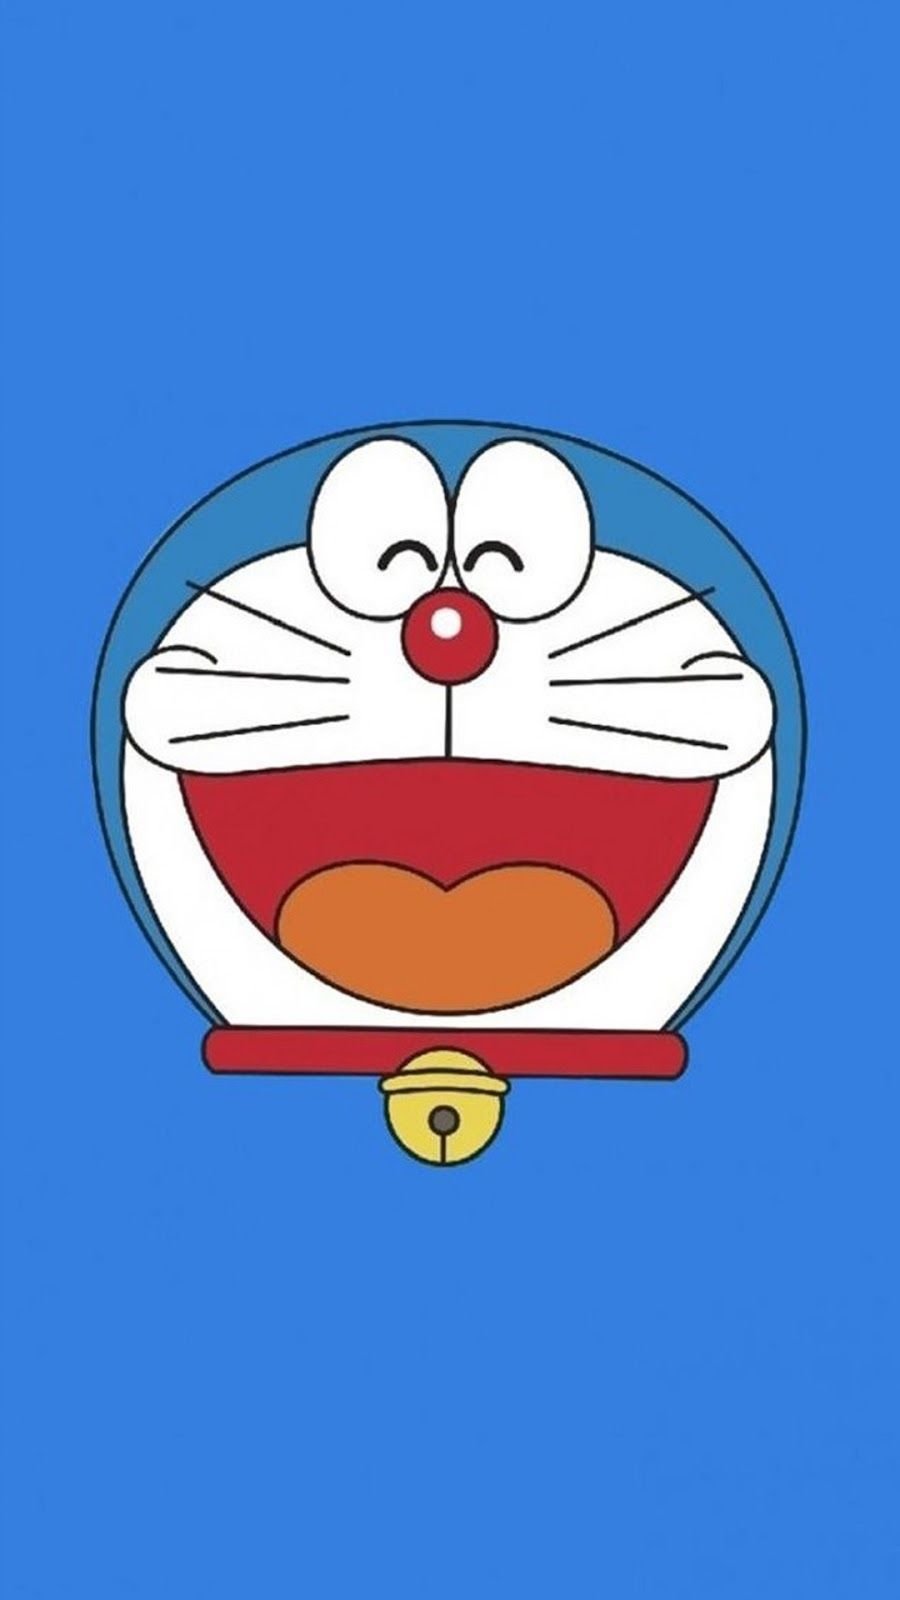 Top 10 - 2 Mỹ Nữ ĐẸP NHẤT Doraemon! Bất Ngờ Số 1 Không Thể Đoán Được! |  Doraemon | Ten Anime - YouTube